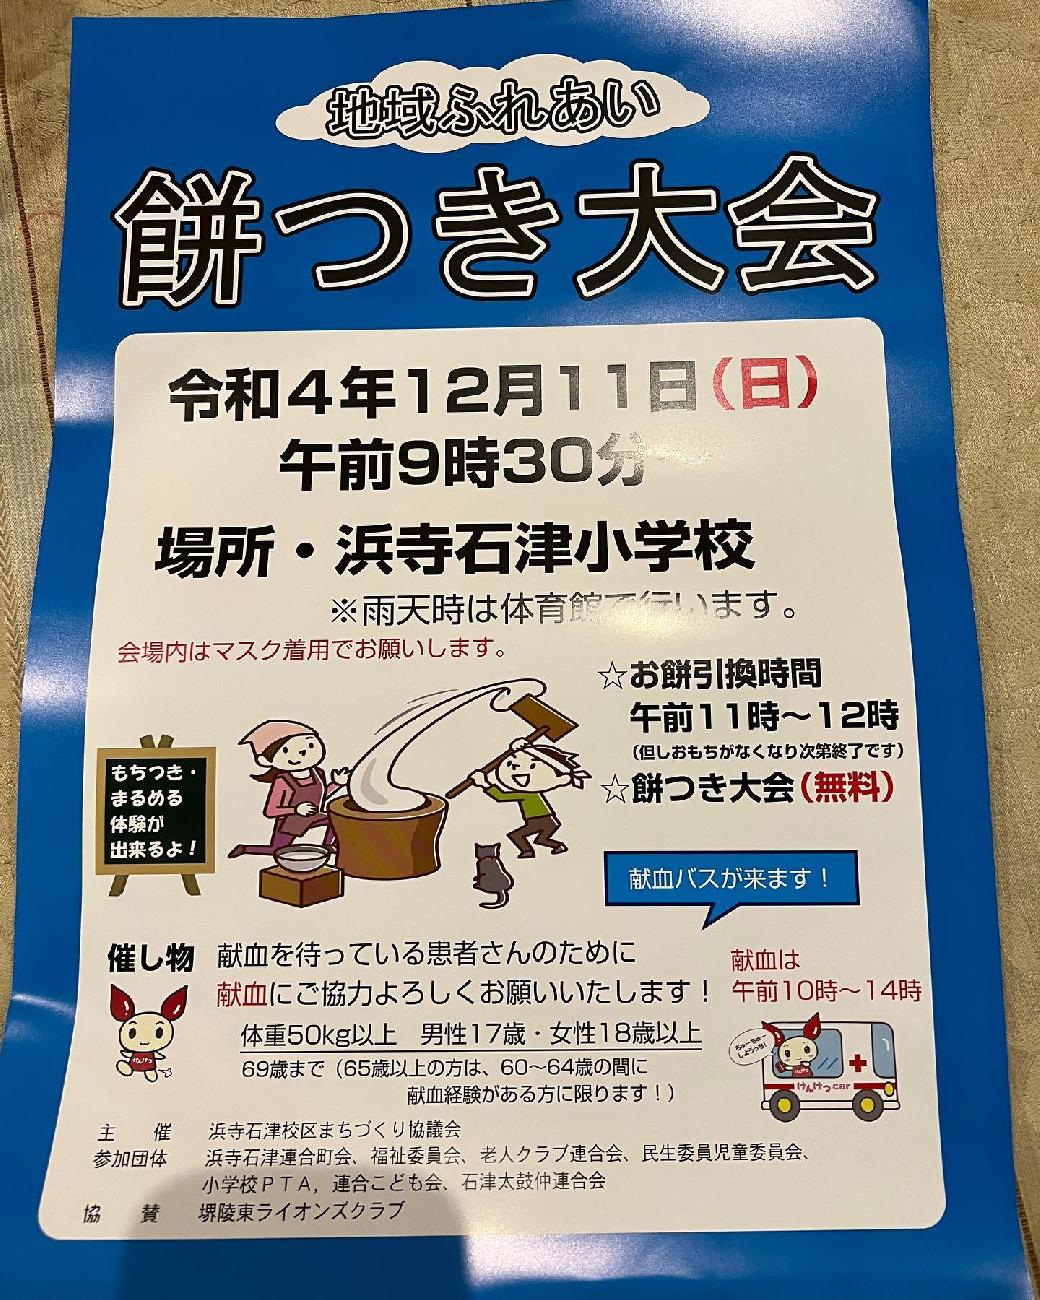 12月11日、浜寺石津小学校の餅つき大会に合わせて献血を実施いたします